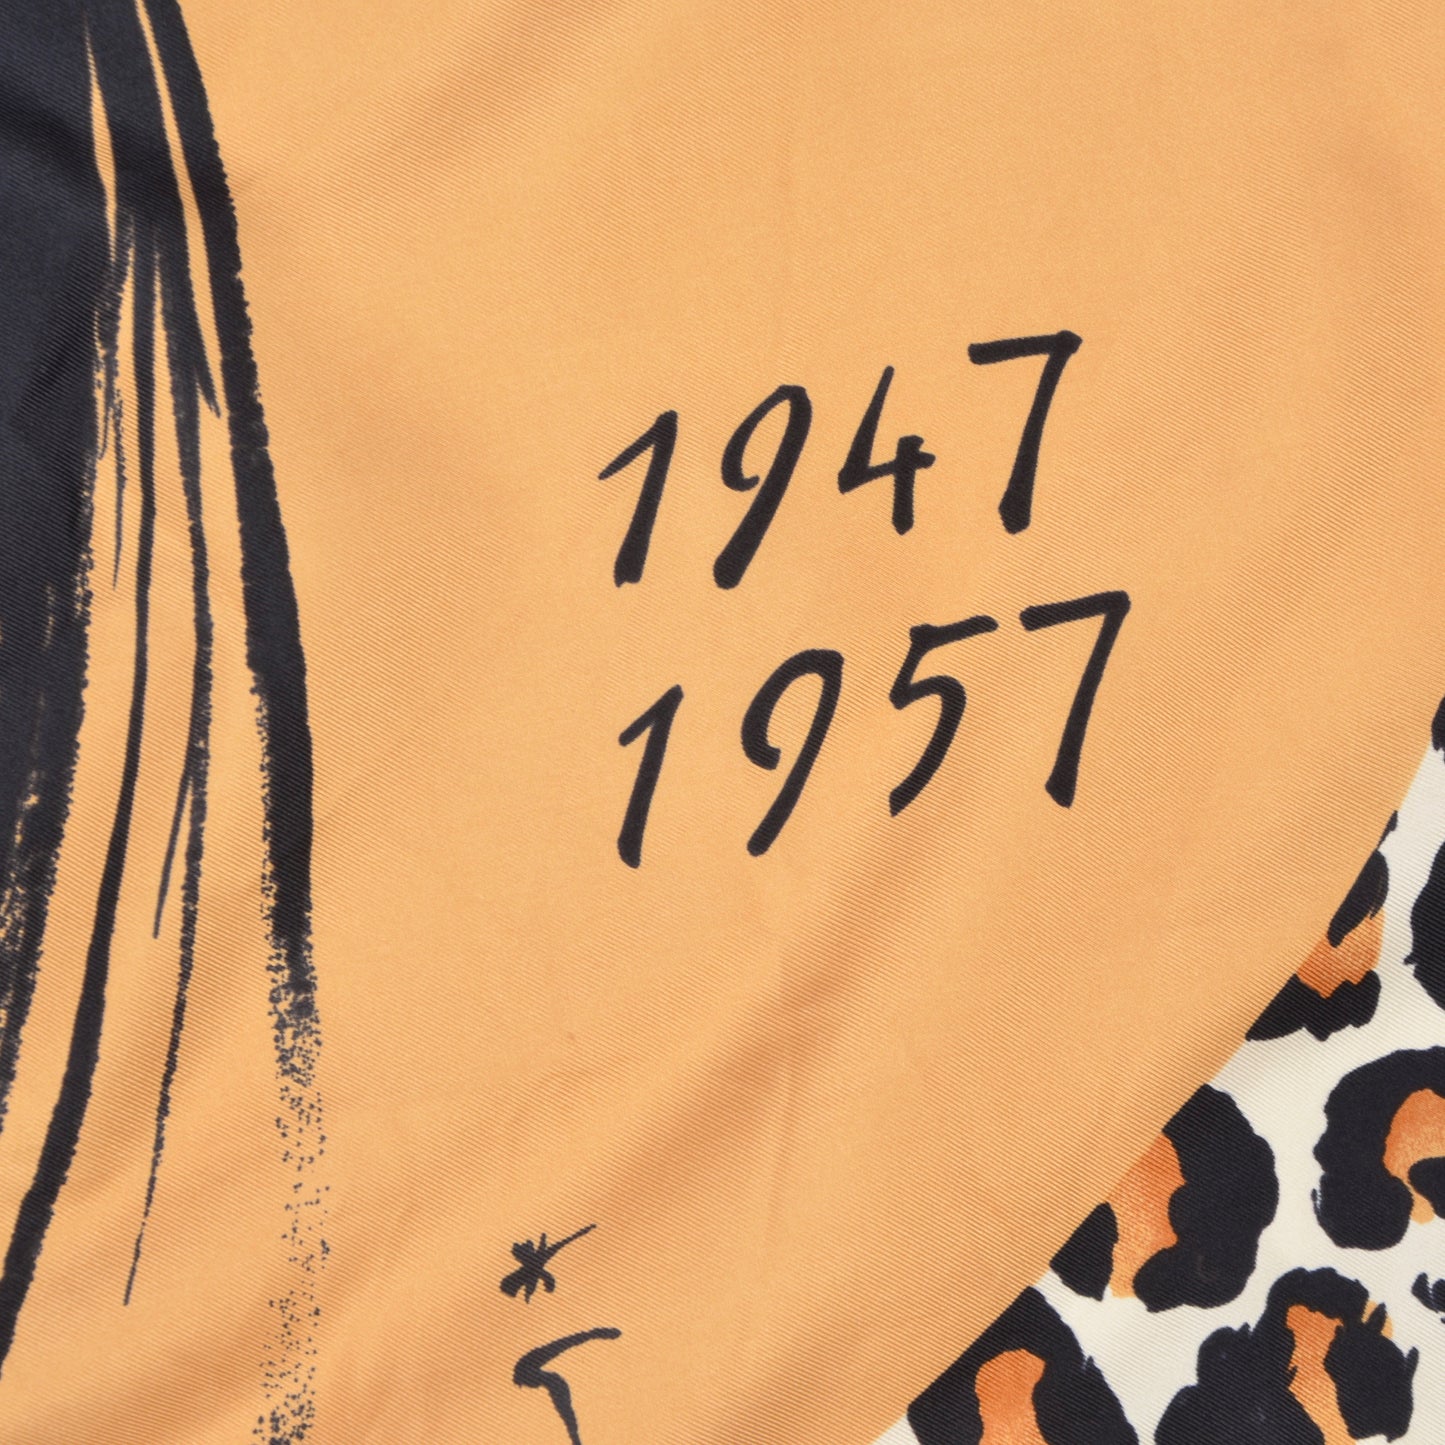 Seidenschal zum 50-jährigen Jubiläum von Christian Dior Paris - le New Look